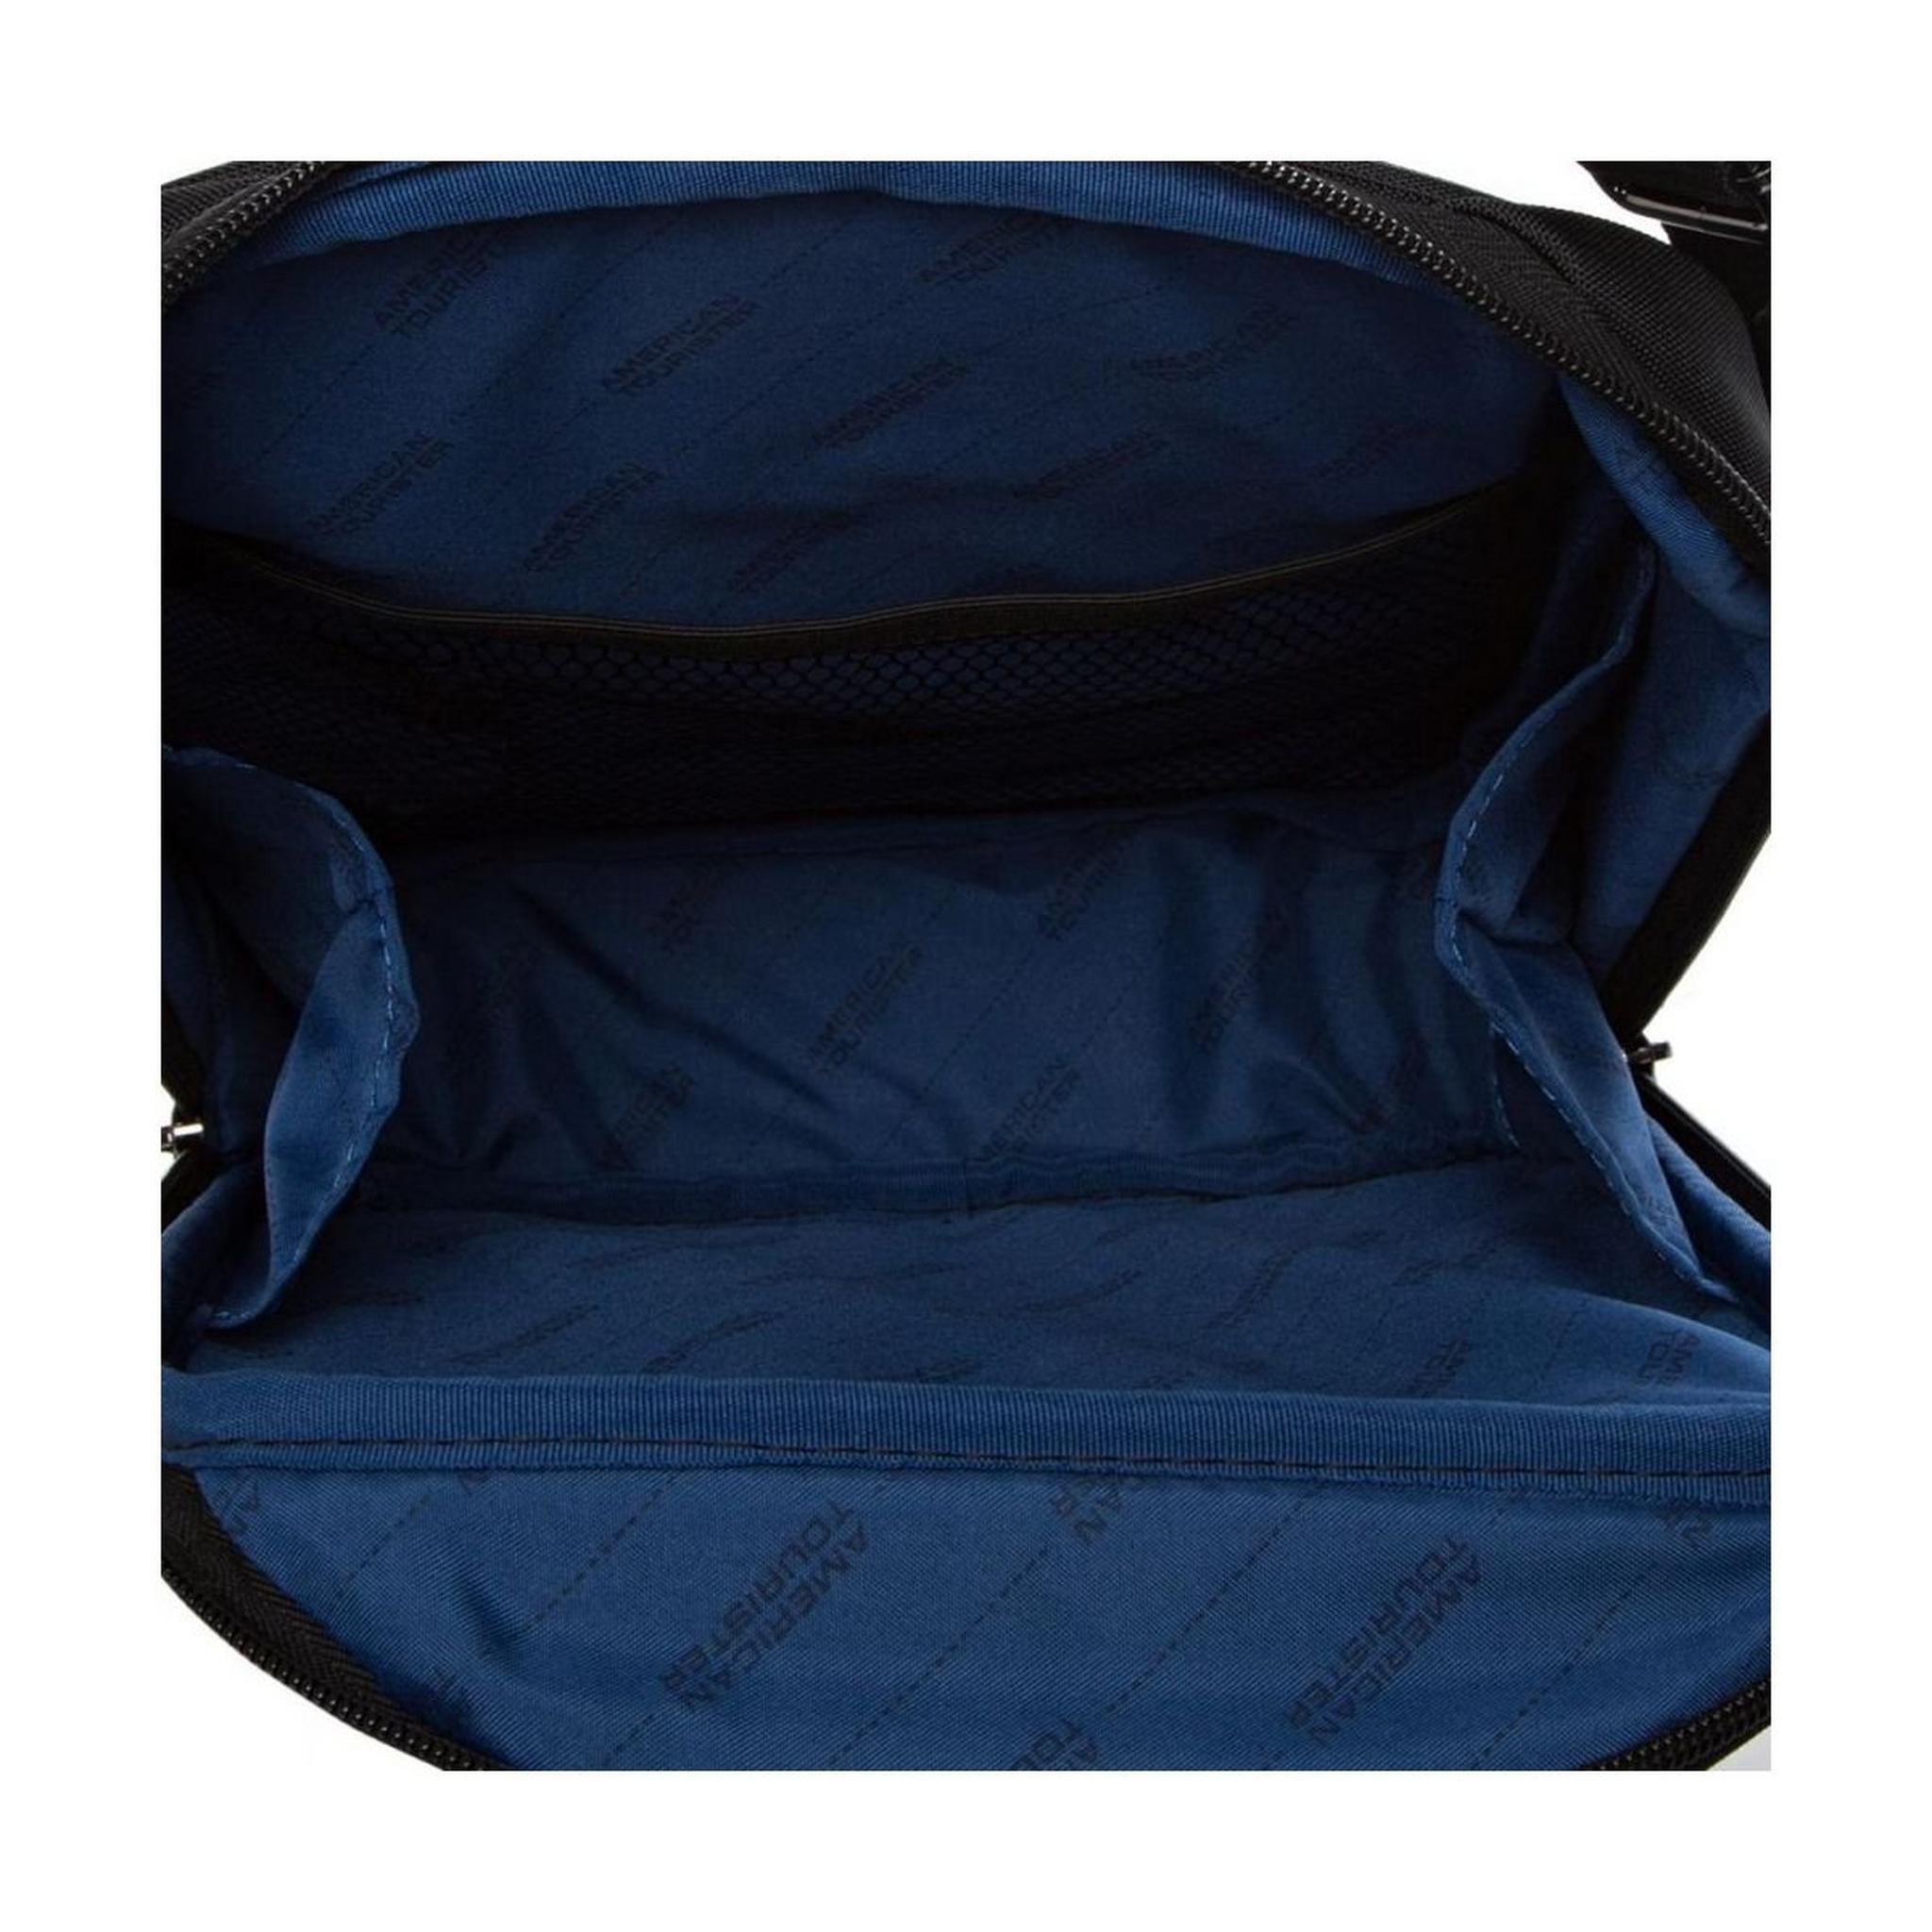 American Tourister Merit Vertical Shoulder Bag (85TX91001) - Black